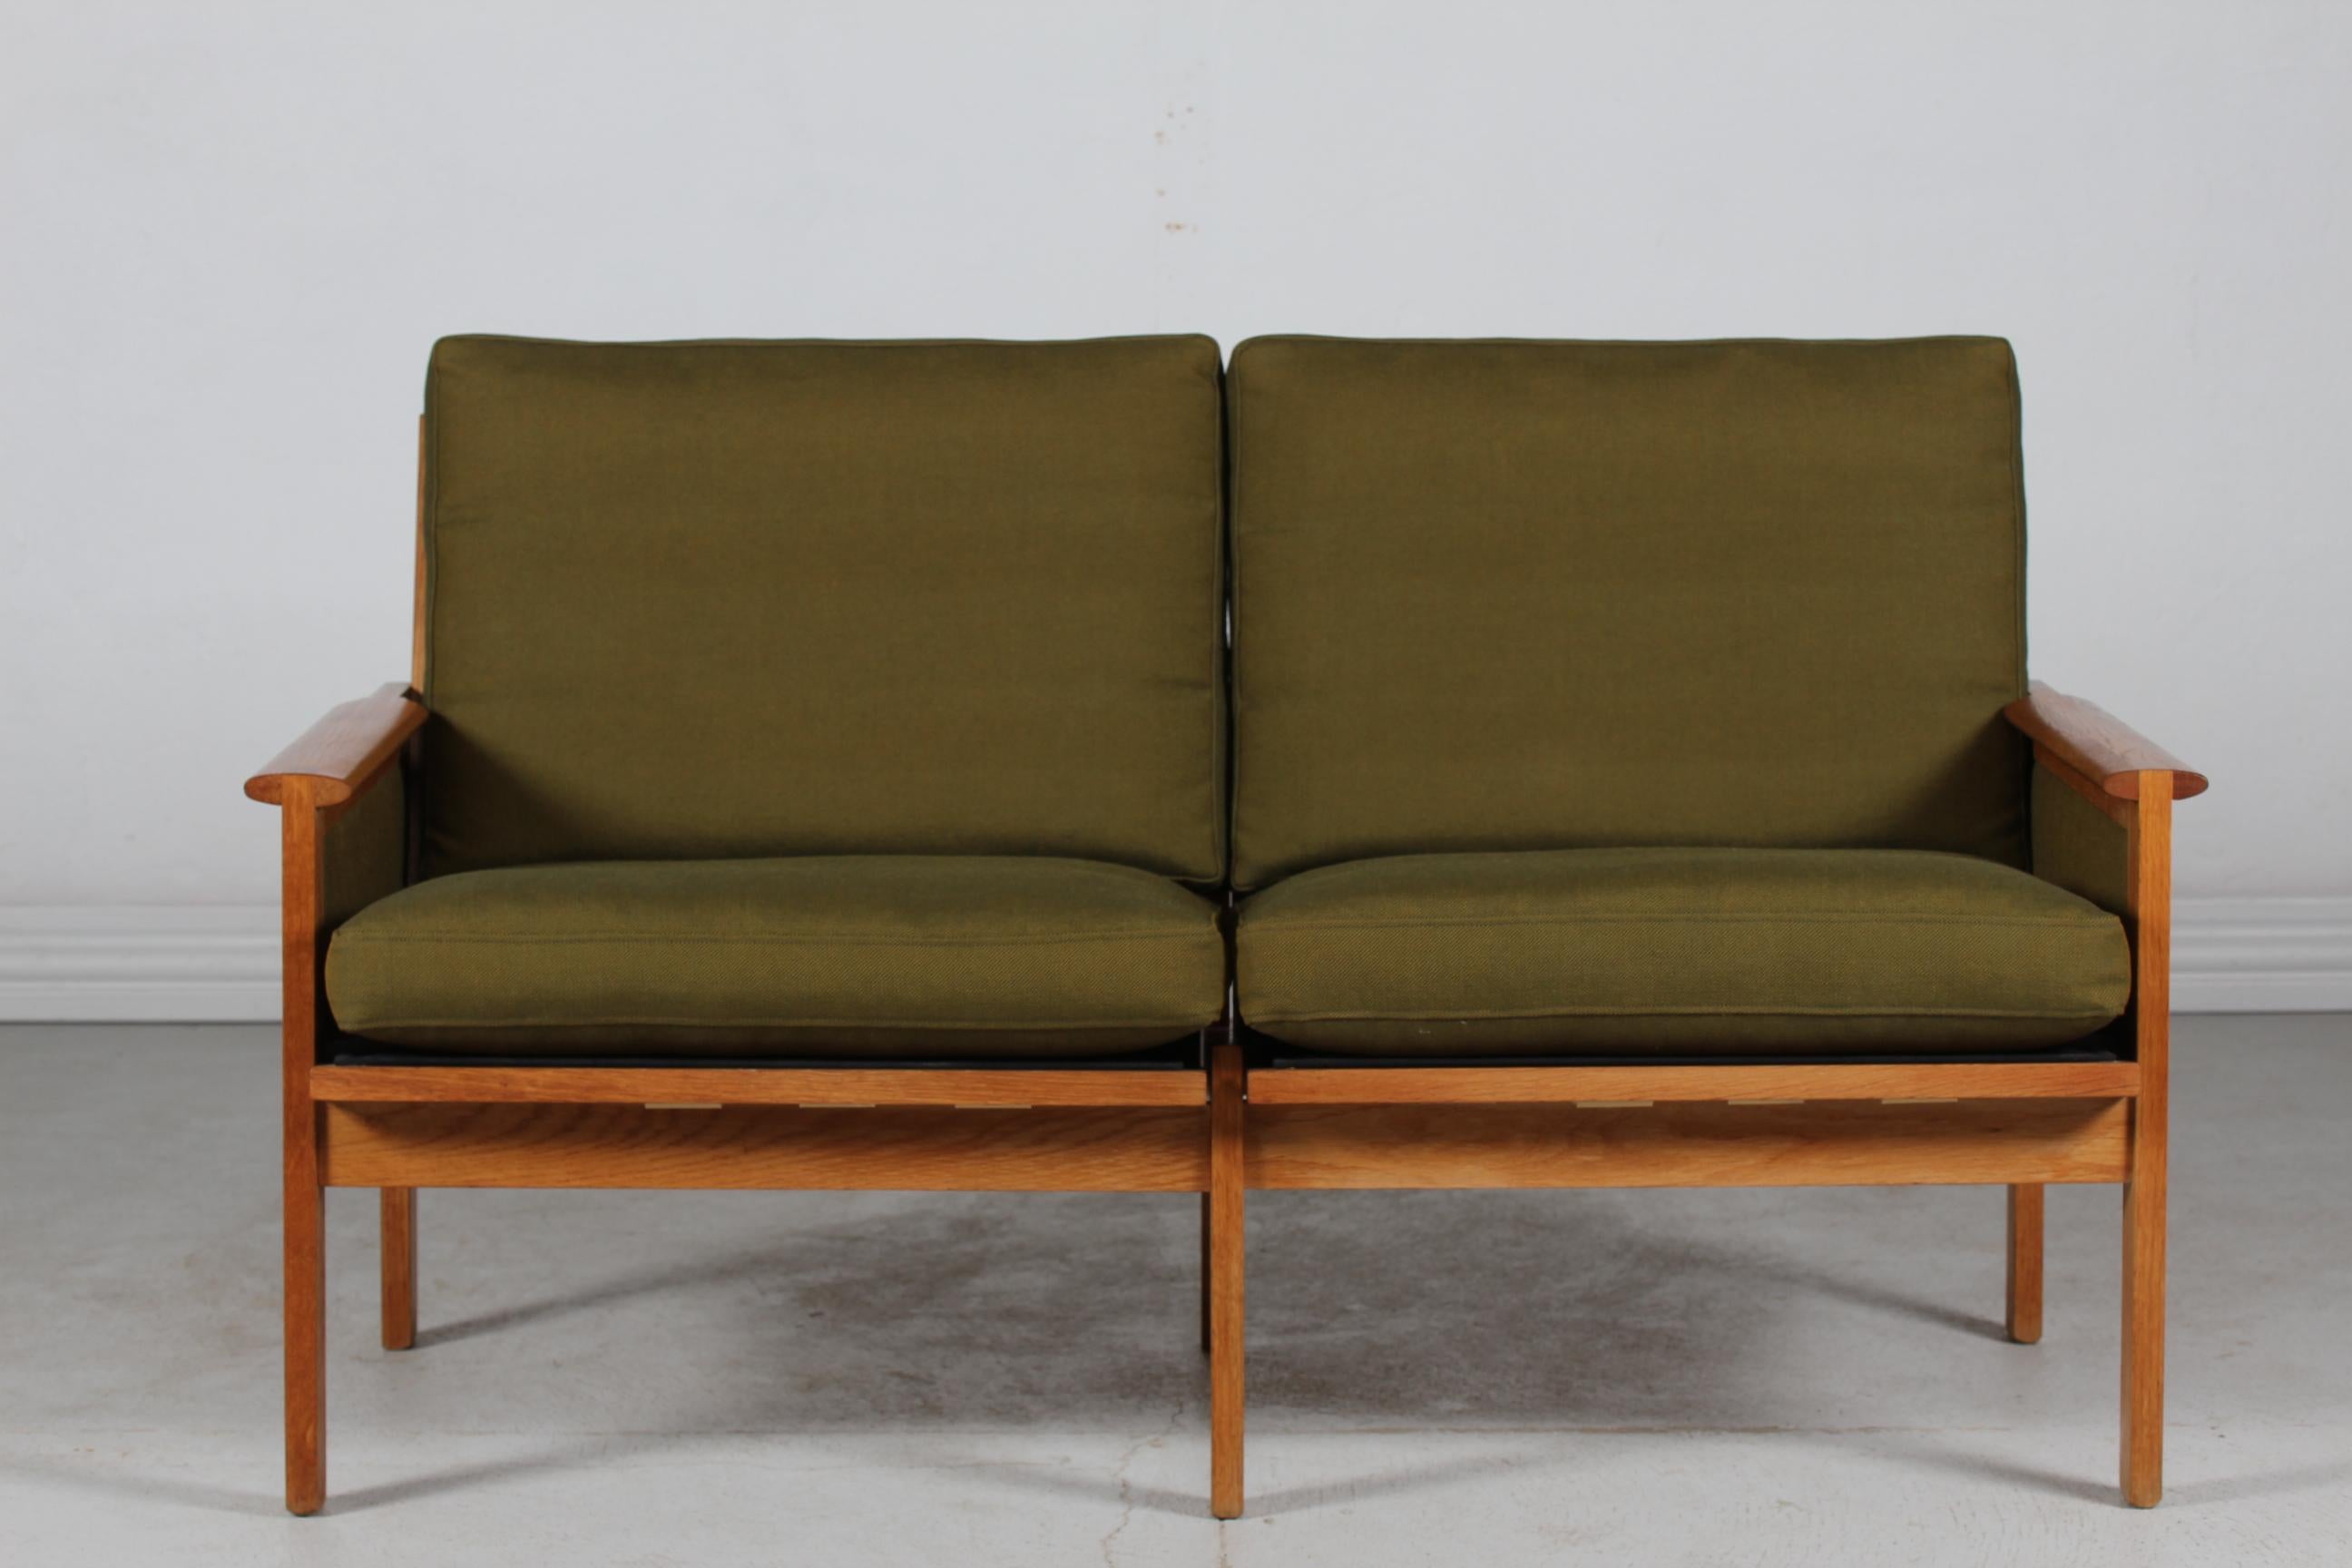 Canapé deux places vintage danois Capella conçu par le designer de meubles danois Kristian Illum Wikkelsø (1919-1999) fabriqué par Niels Eilersen, Danemark.
Le canapé est fabriqué en chêne massif et tapissé avec le tissu original de couleur